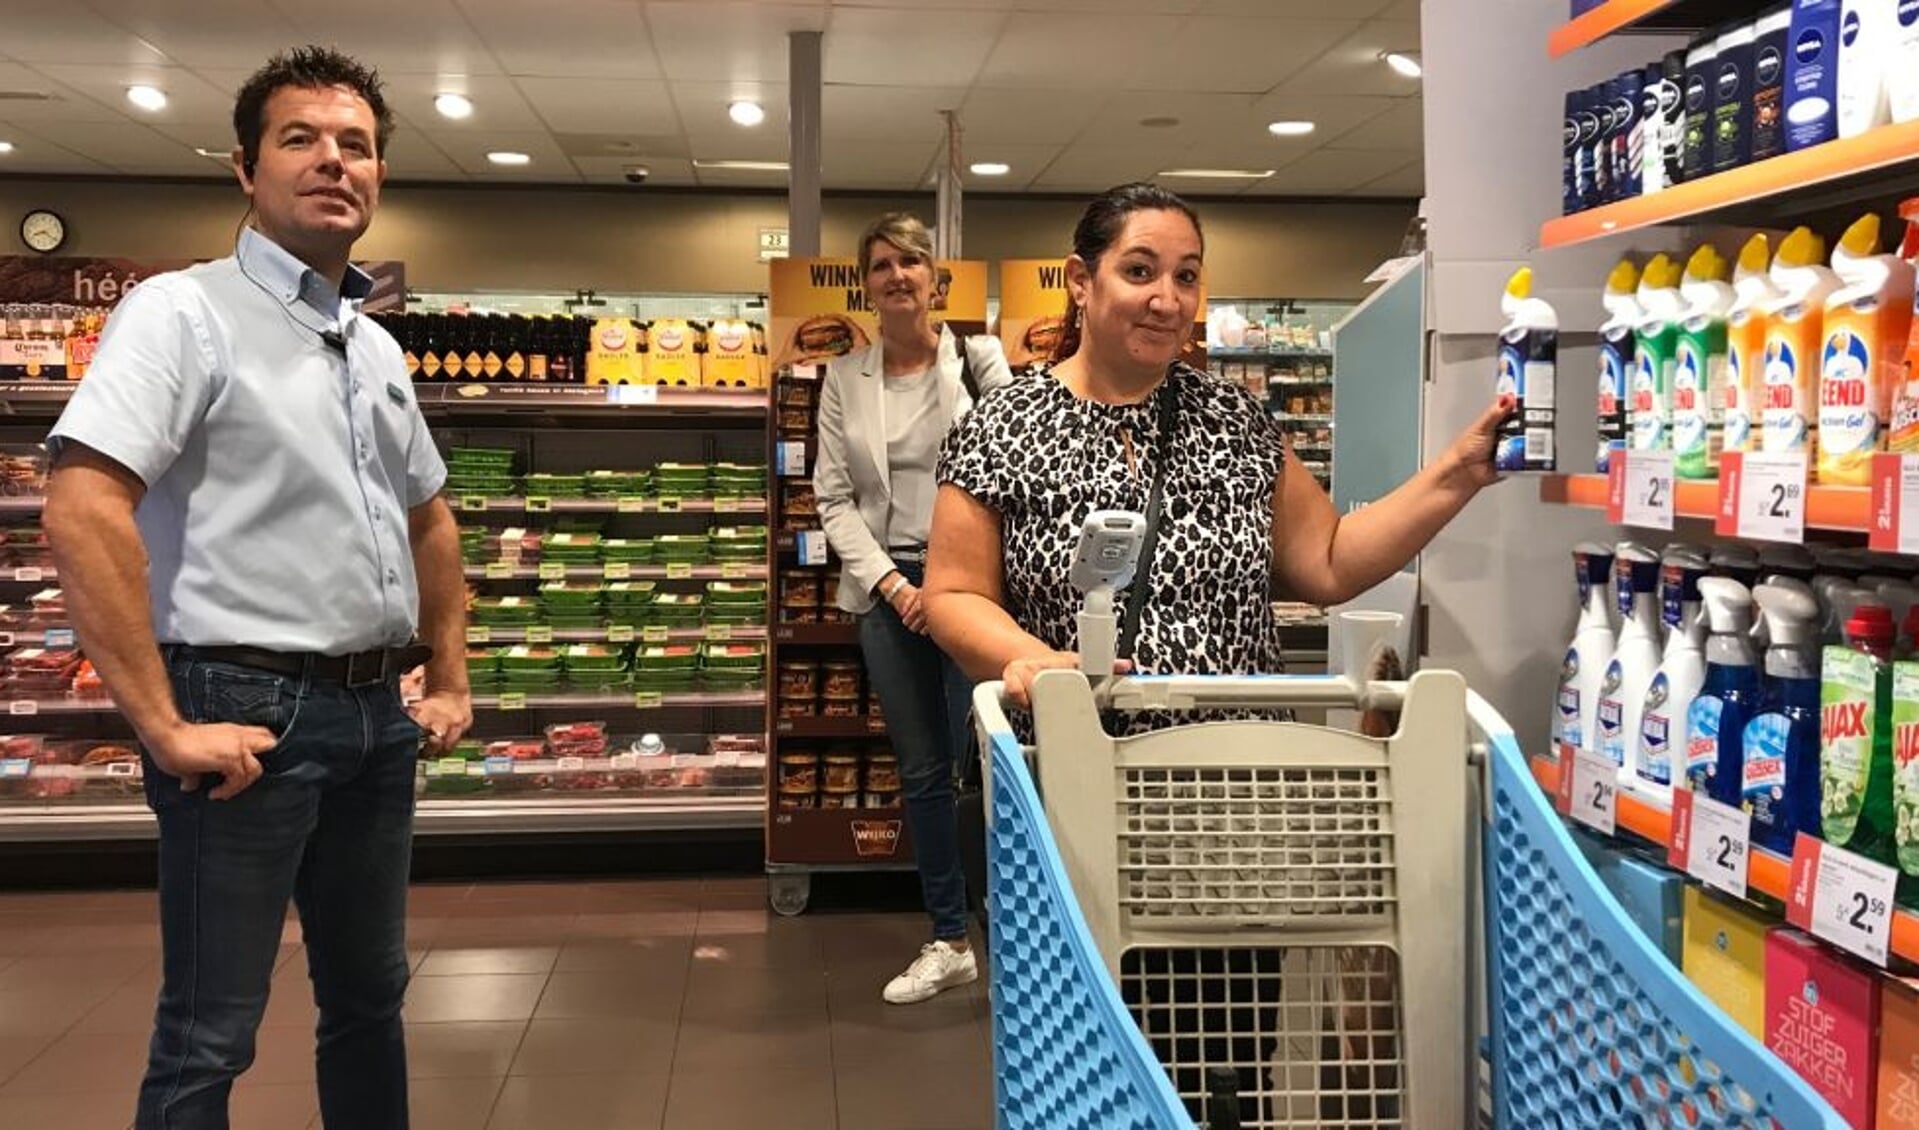 Zorgen om coronaregels in supermarkt: ,,Het is af en toe slalommen” Houtens Nieuws | Nieuws uit de regio Houten